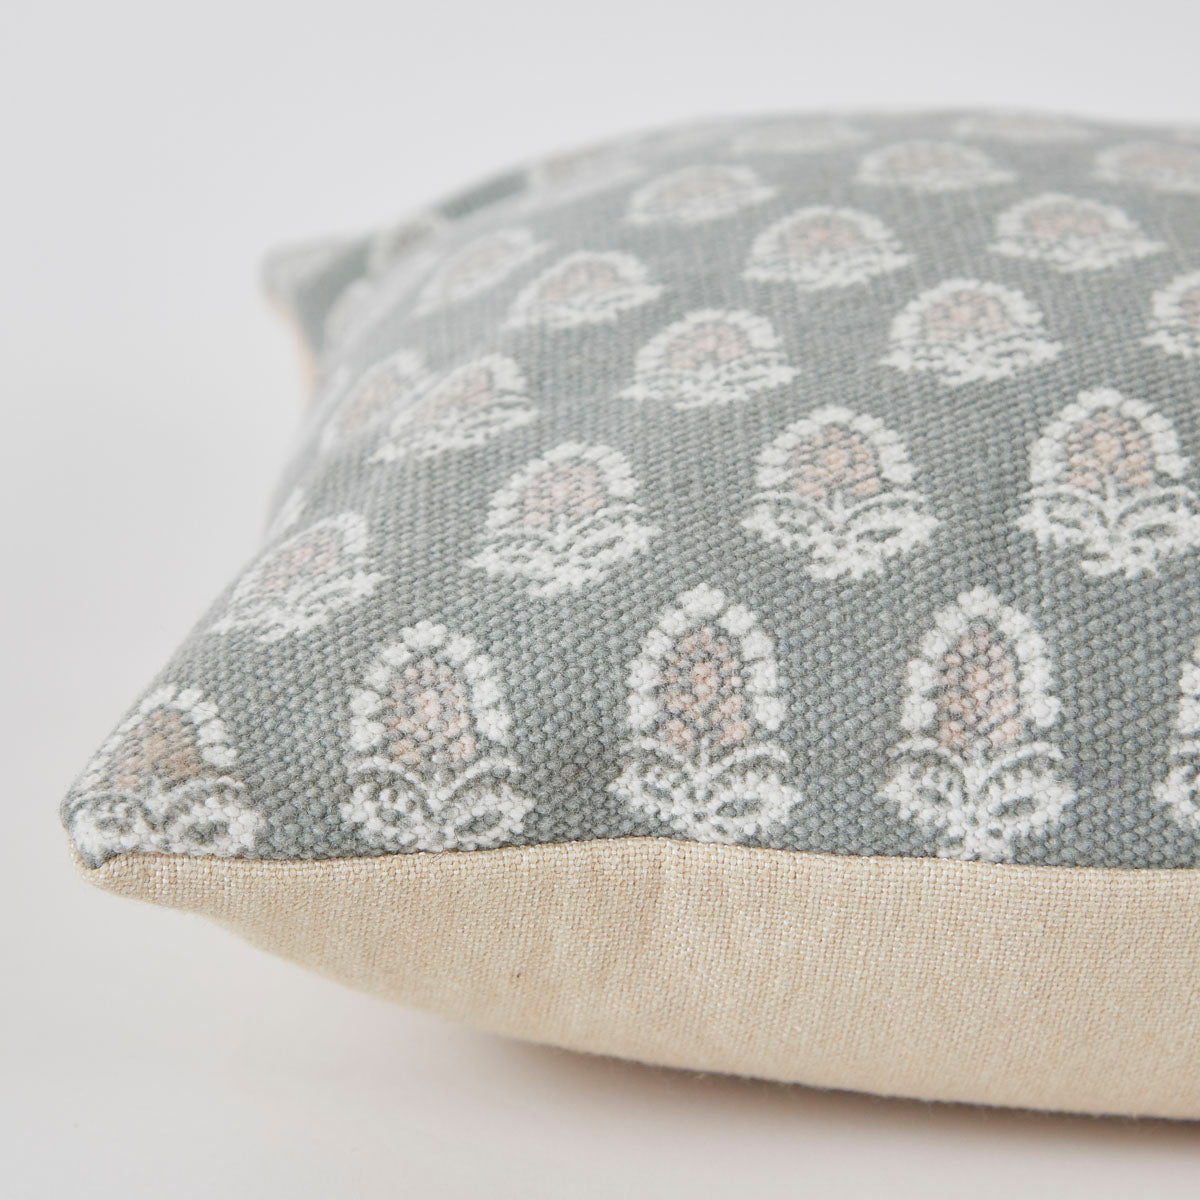 Jaipur Acorn Dove Grey Cushion